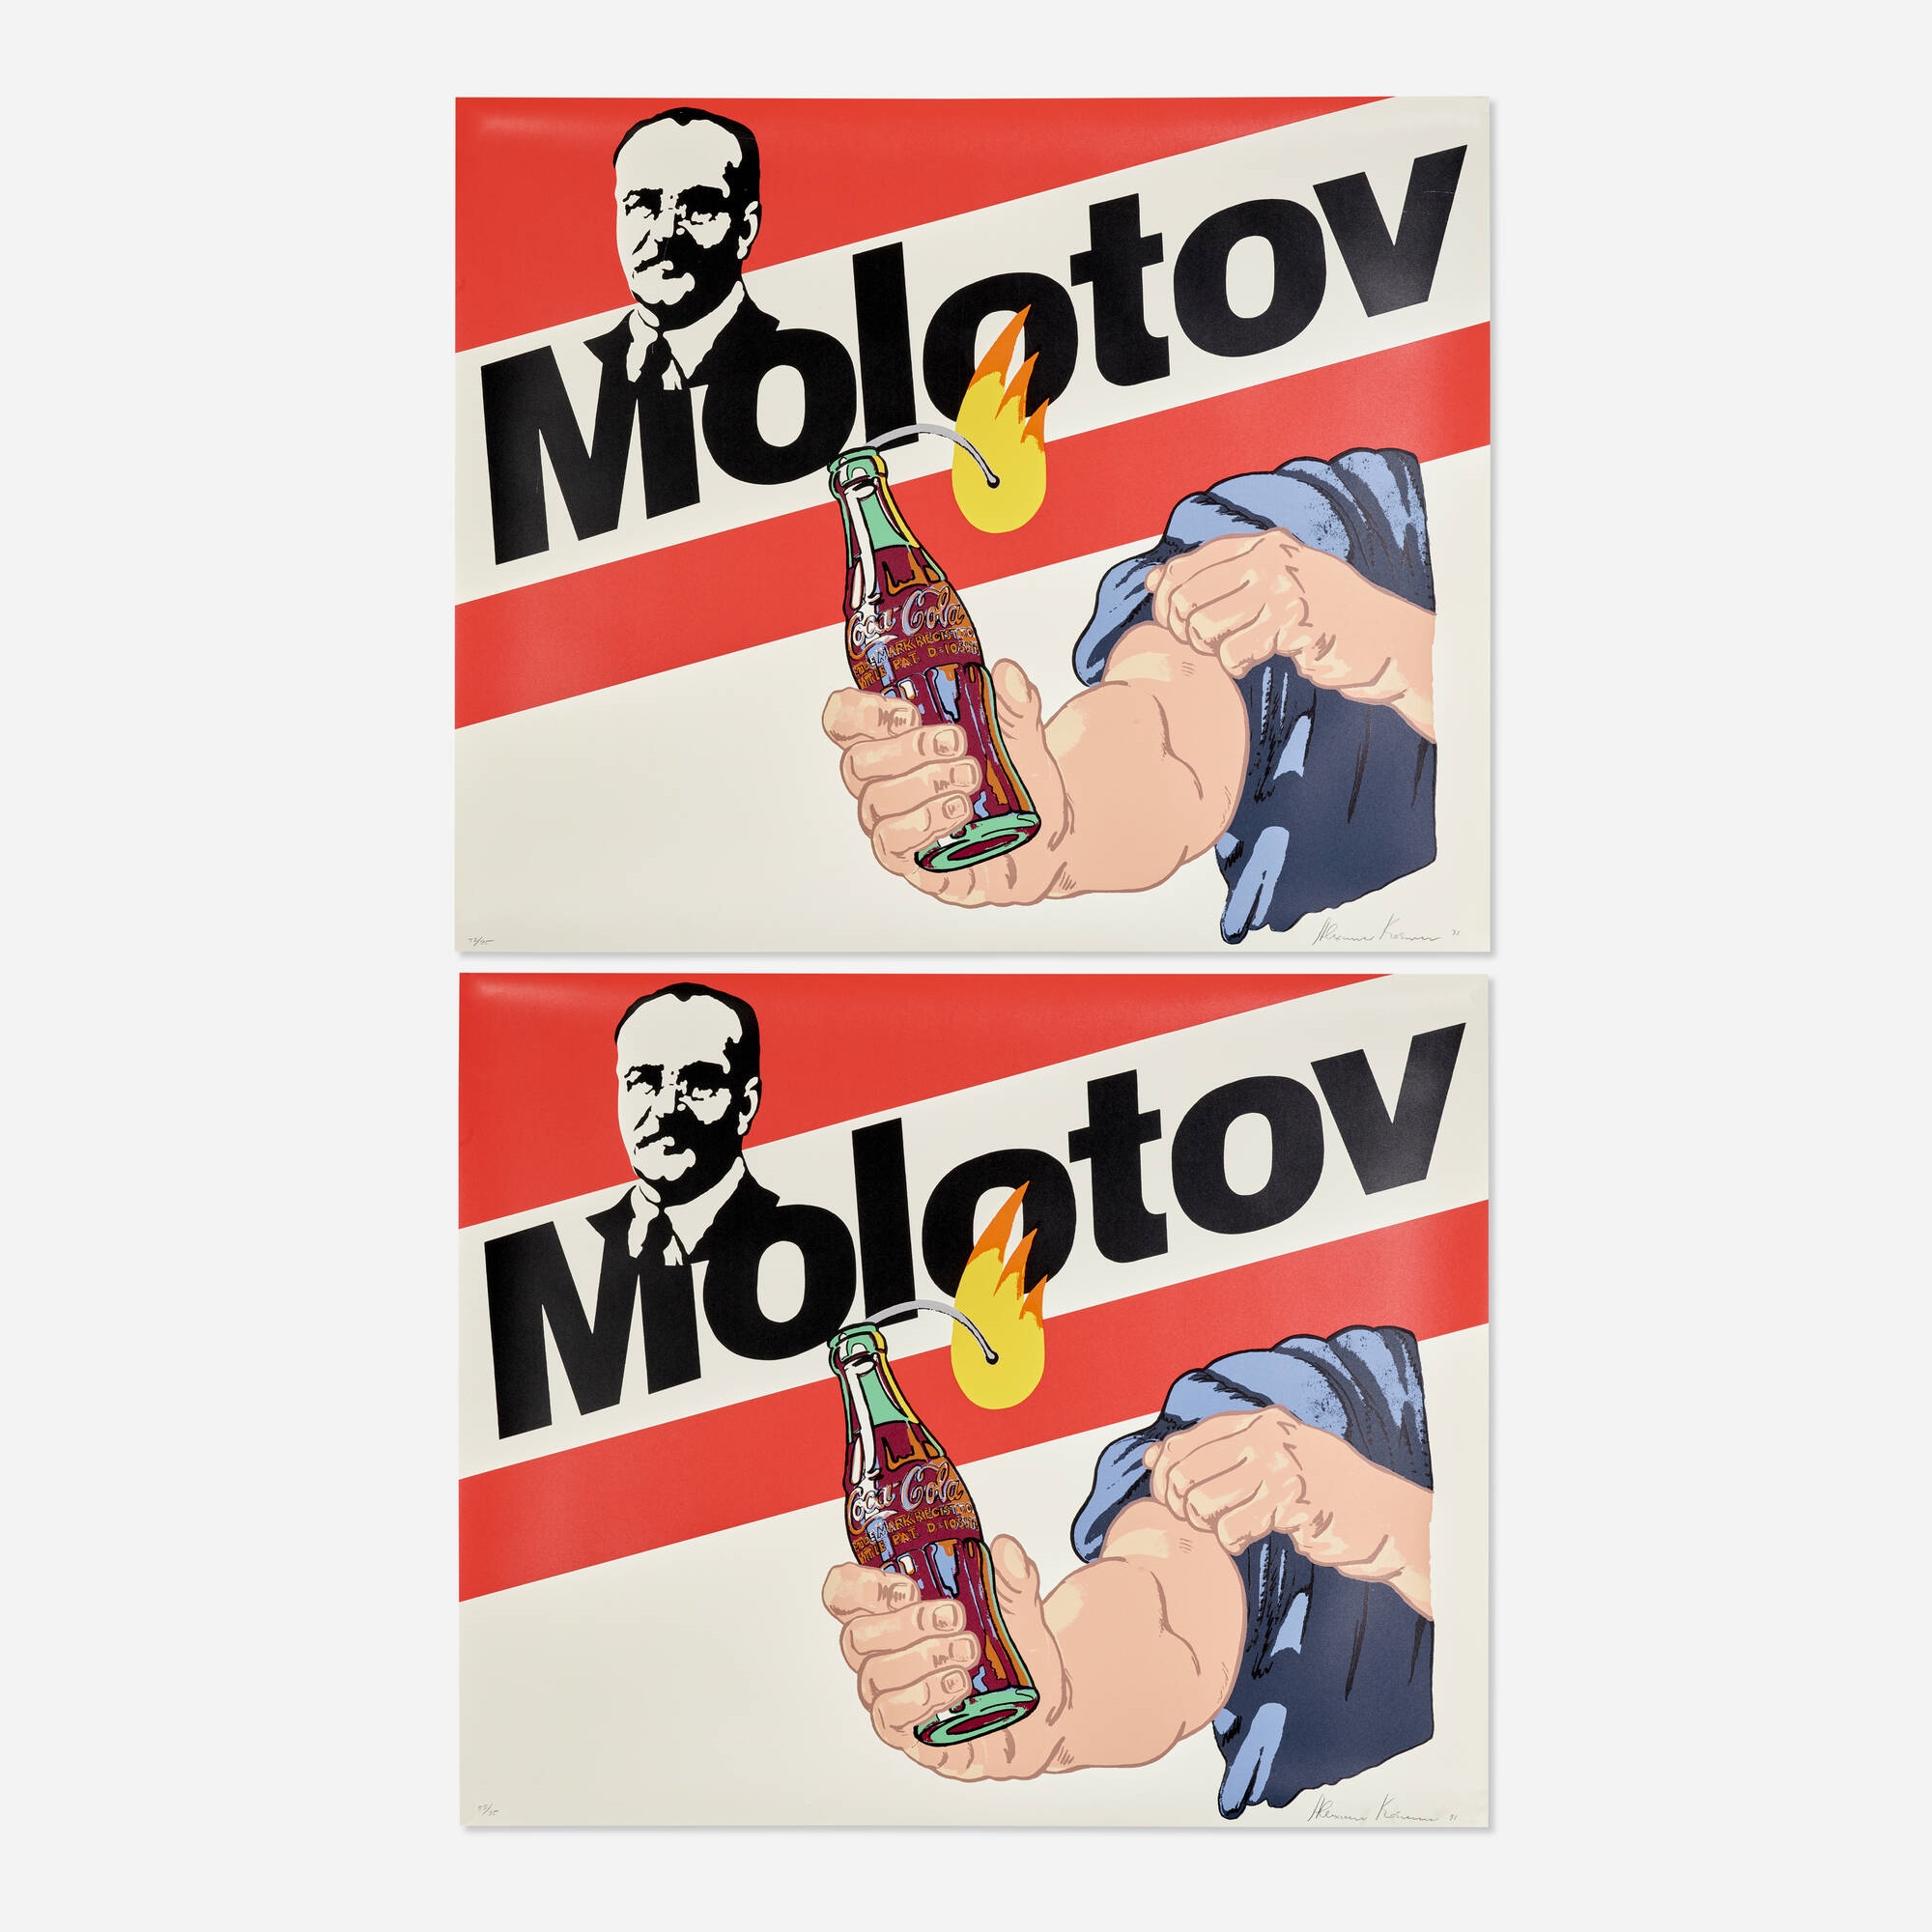 Molotov Cocktail (two works) - Alexander Kosolapov